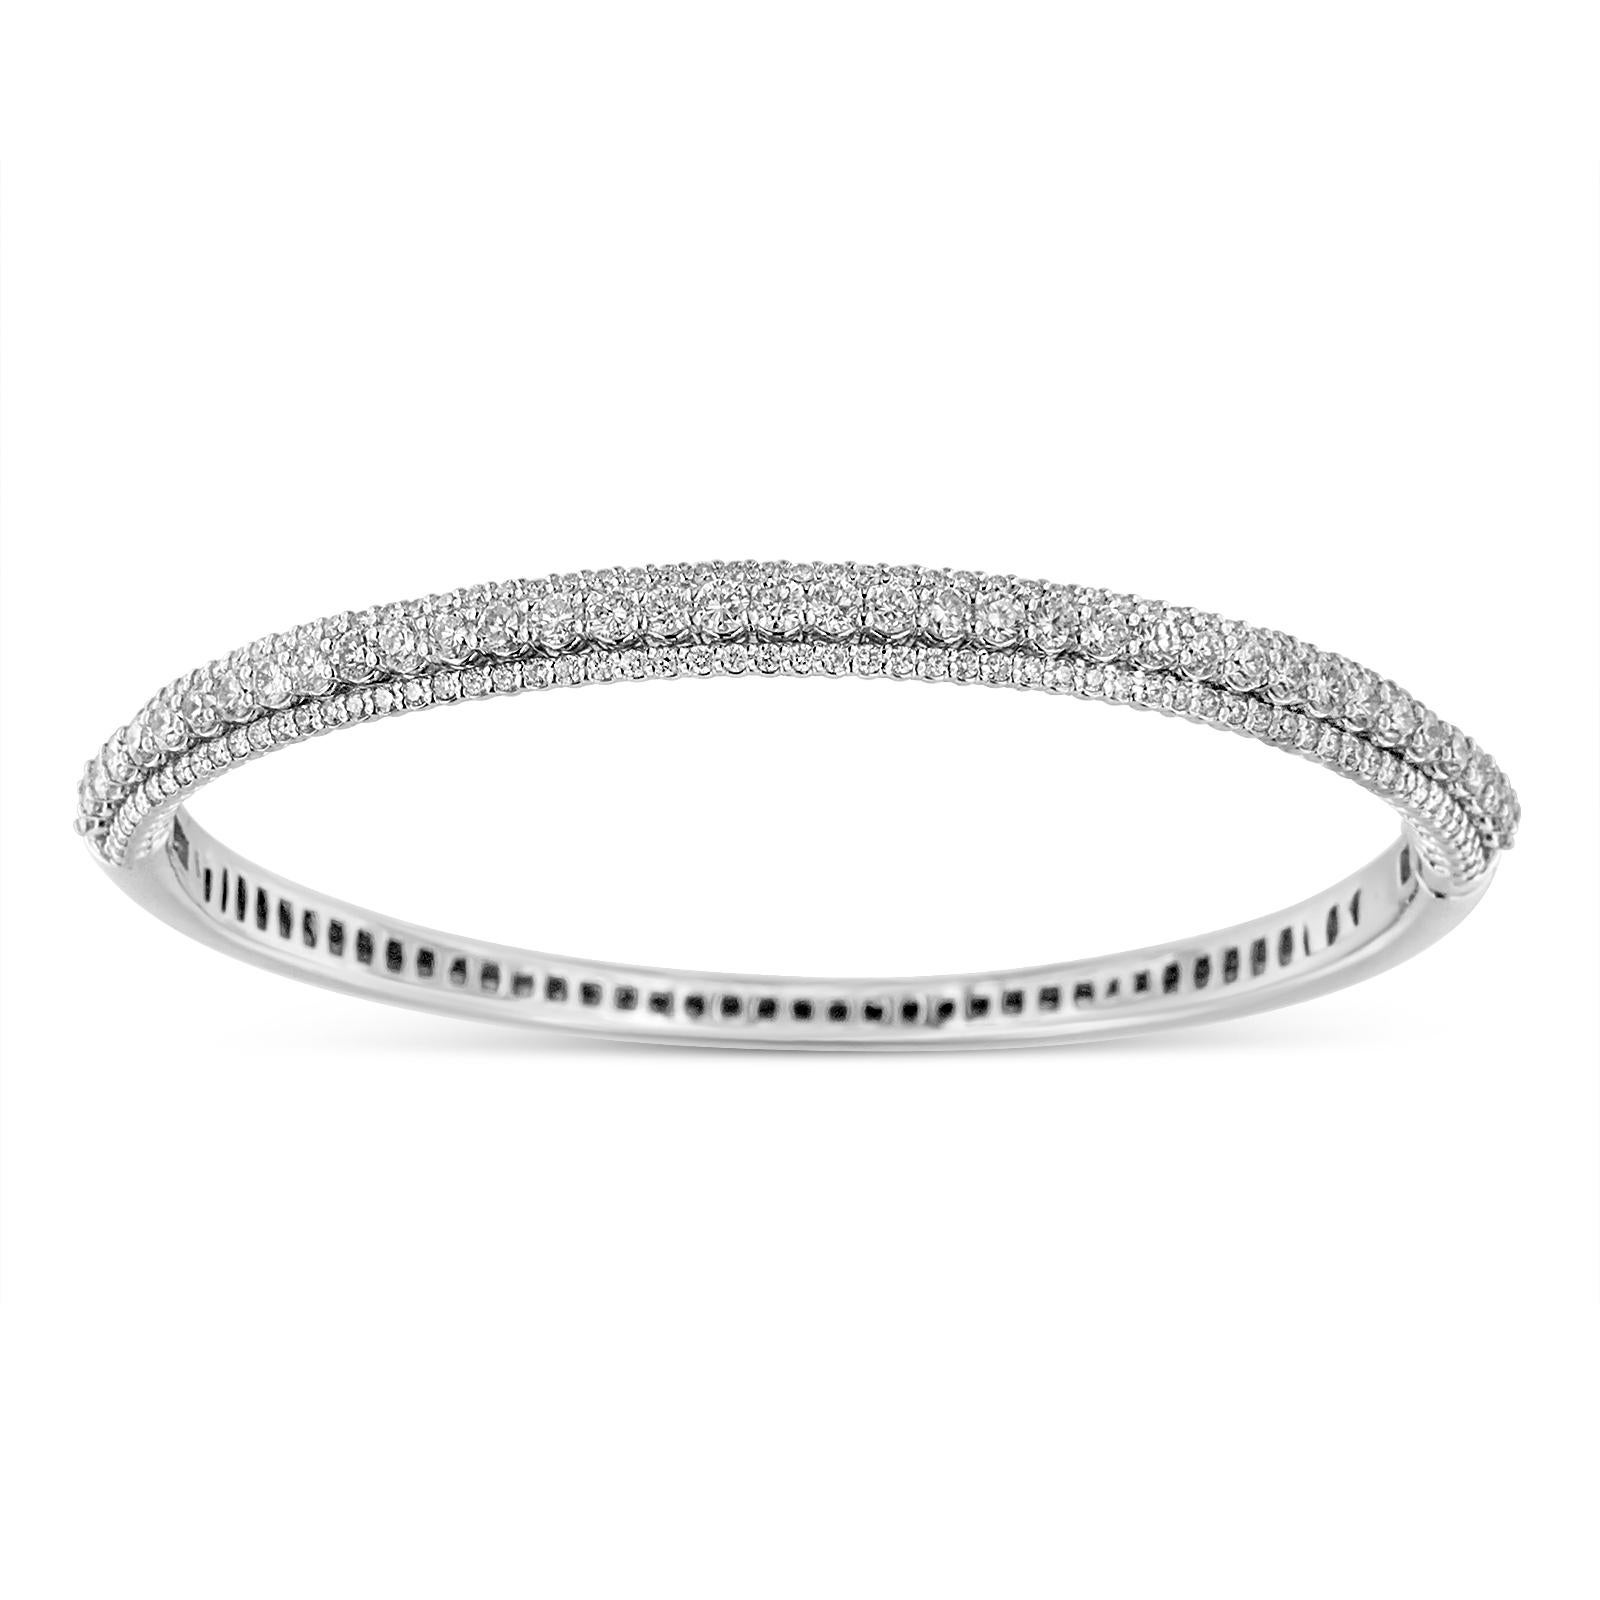 3 row diamond bracelet